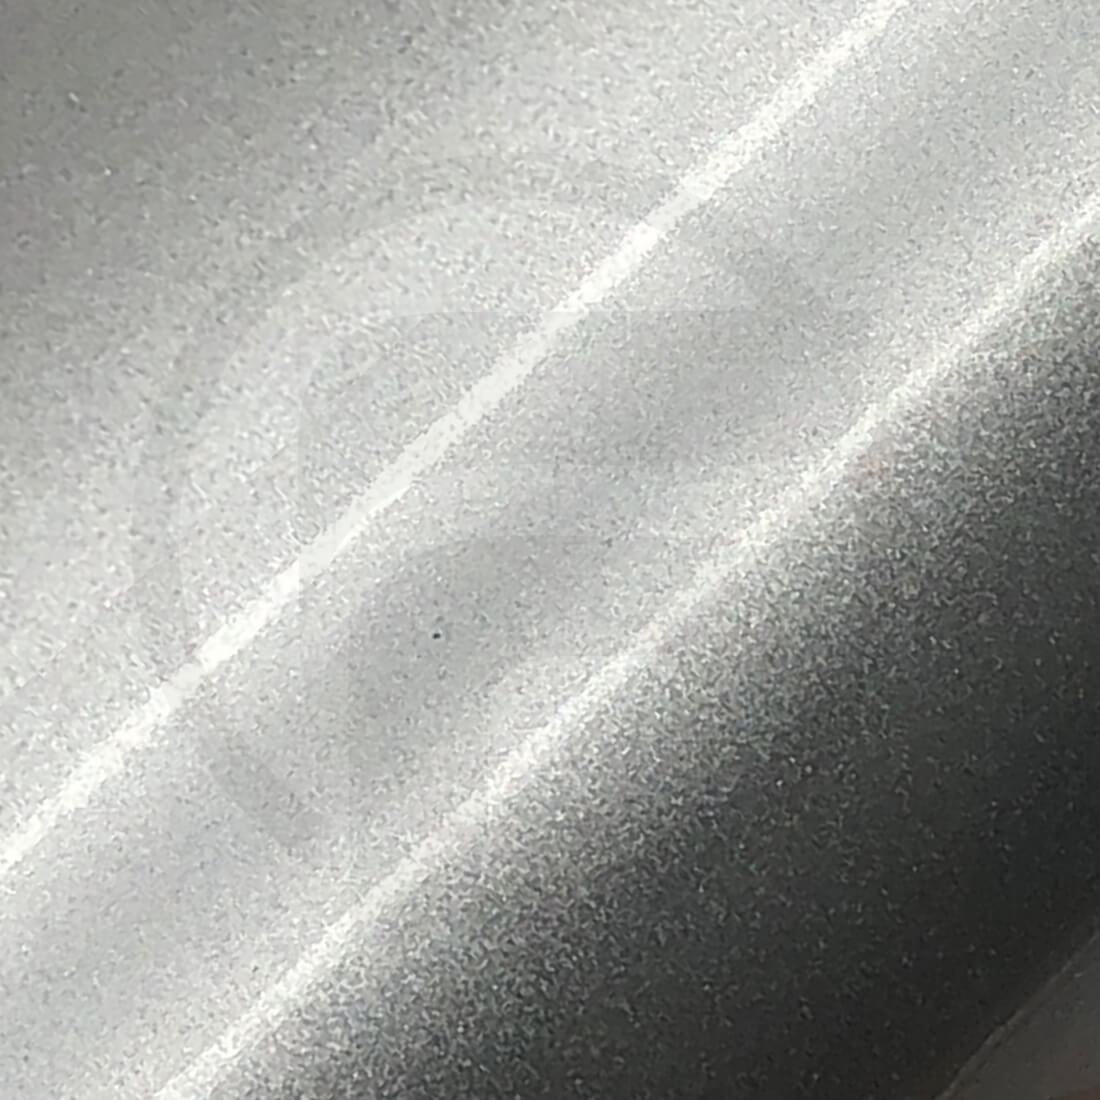 Car Wrapping Folie von Oracal. Silbergrau metallic (Rapid Air